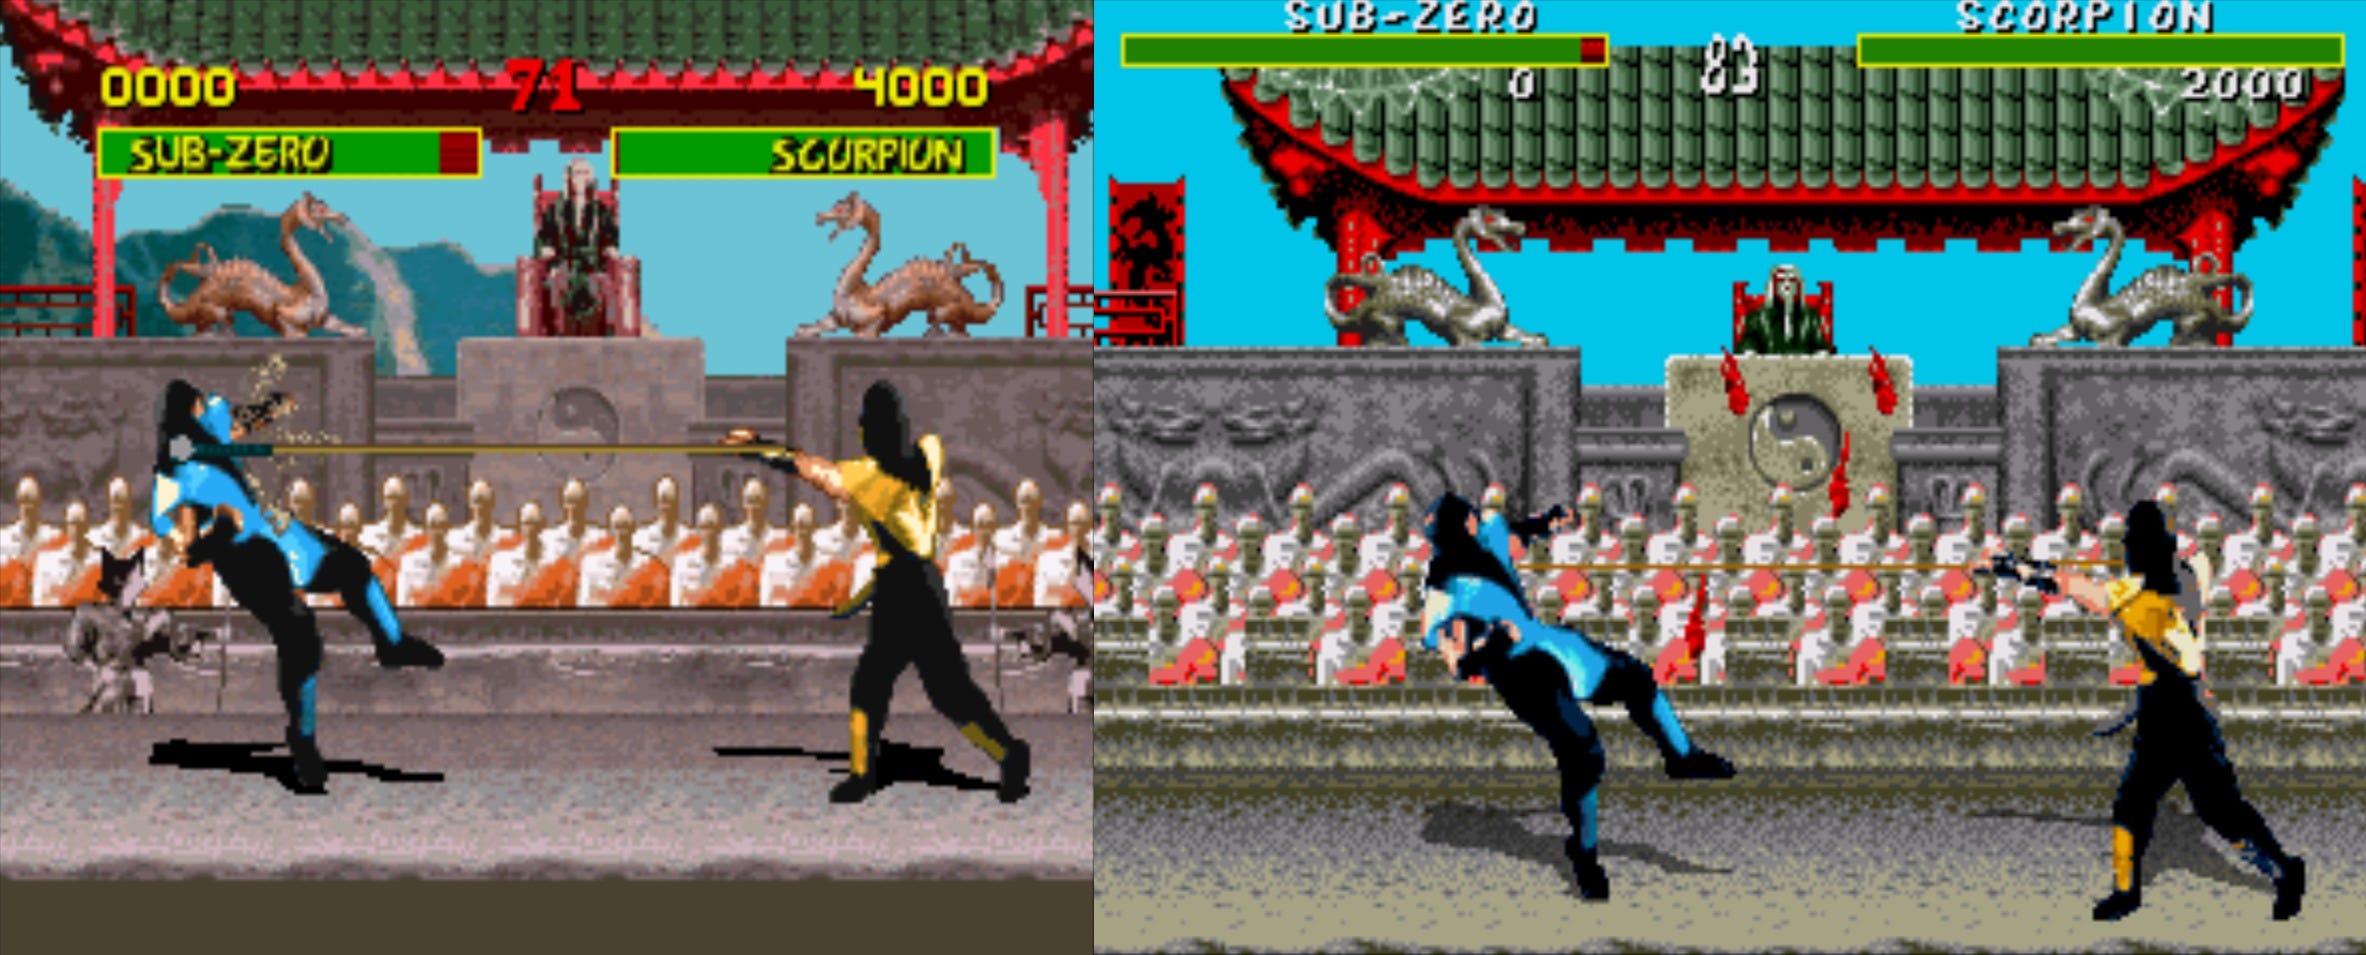 Play Mortal Kombat 3 Online - Sega Genesis Classic Games Online